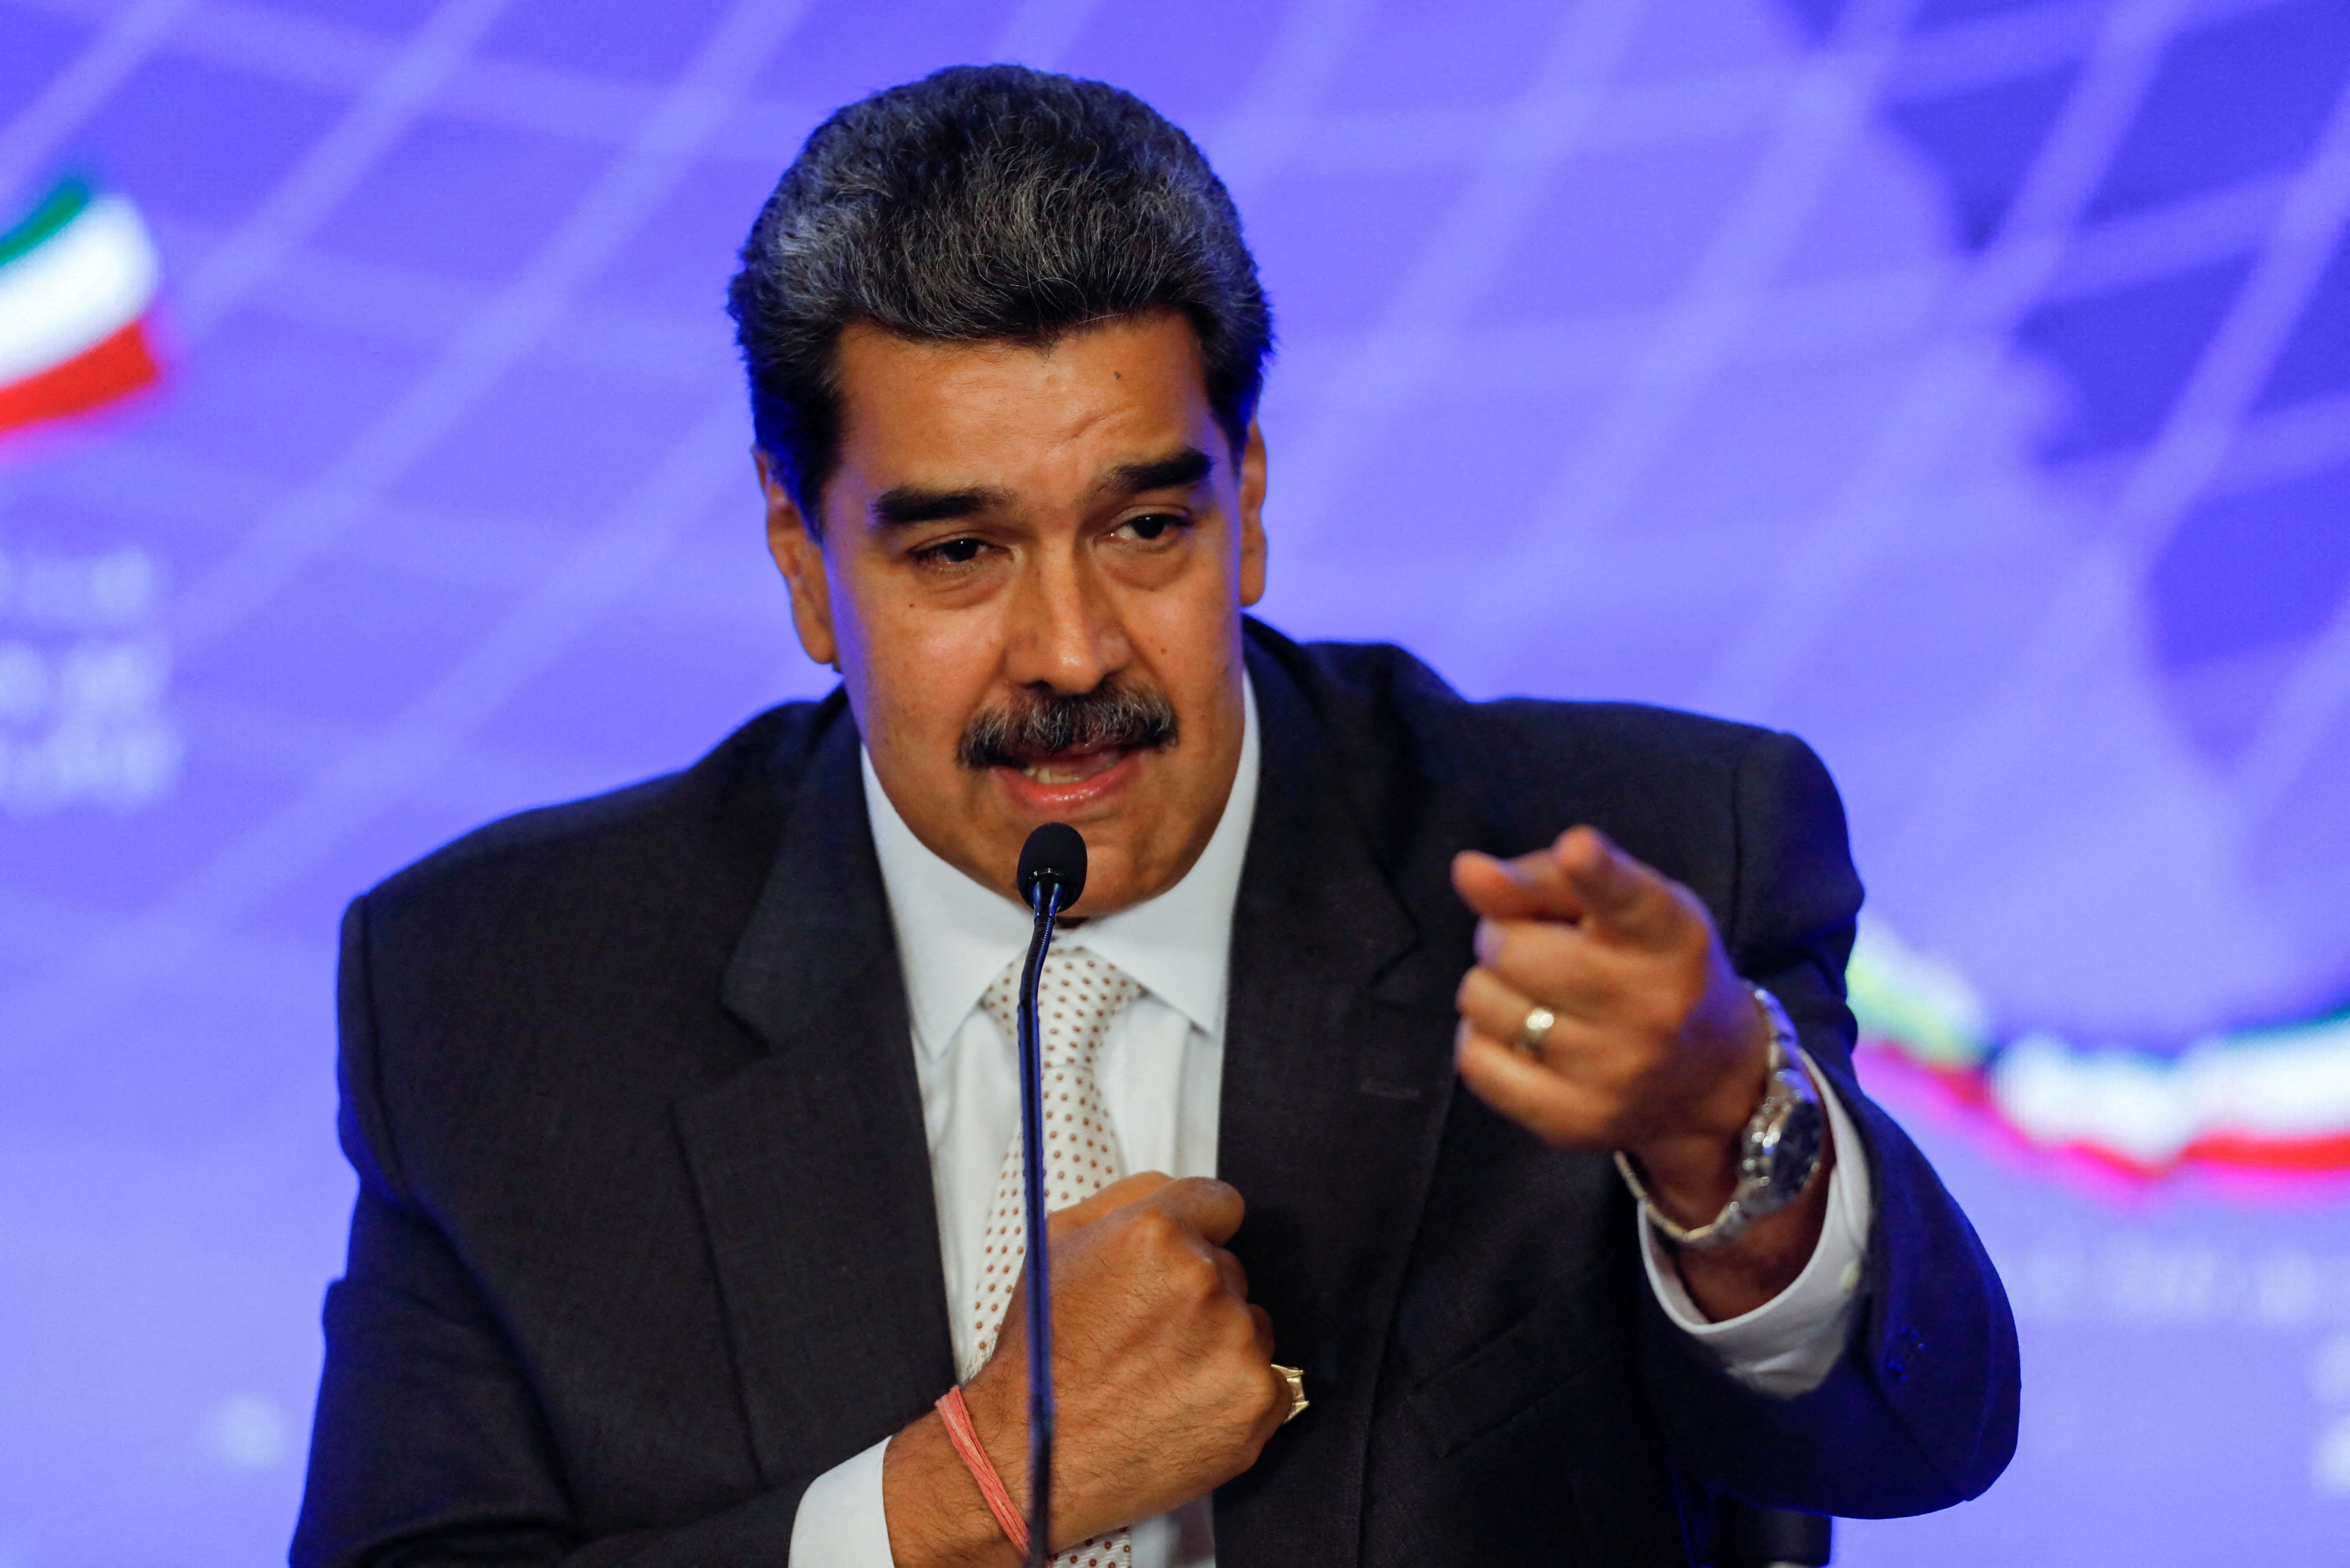 Αποκλειστικά: Οι Ηνωμένες Πολιτείες χαλαρώνουν τις πετρελαϊκές κυρώσεις στη Βενεζουέλα μετά την εκλογική συμφωνία